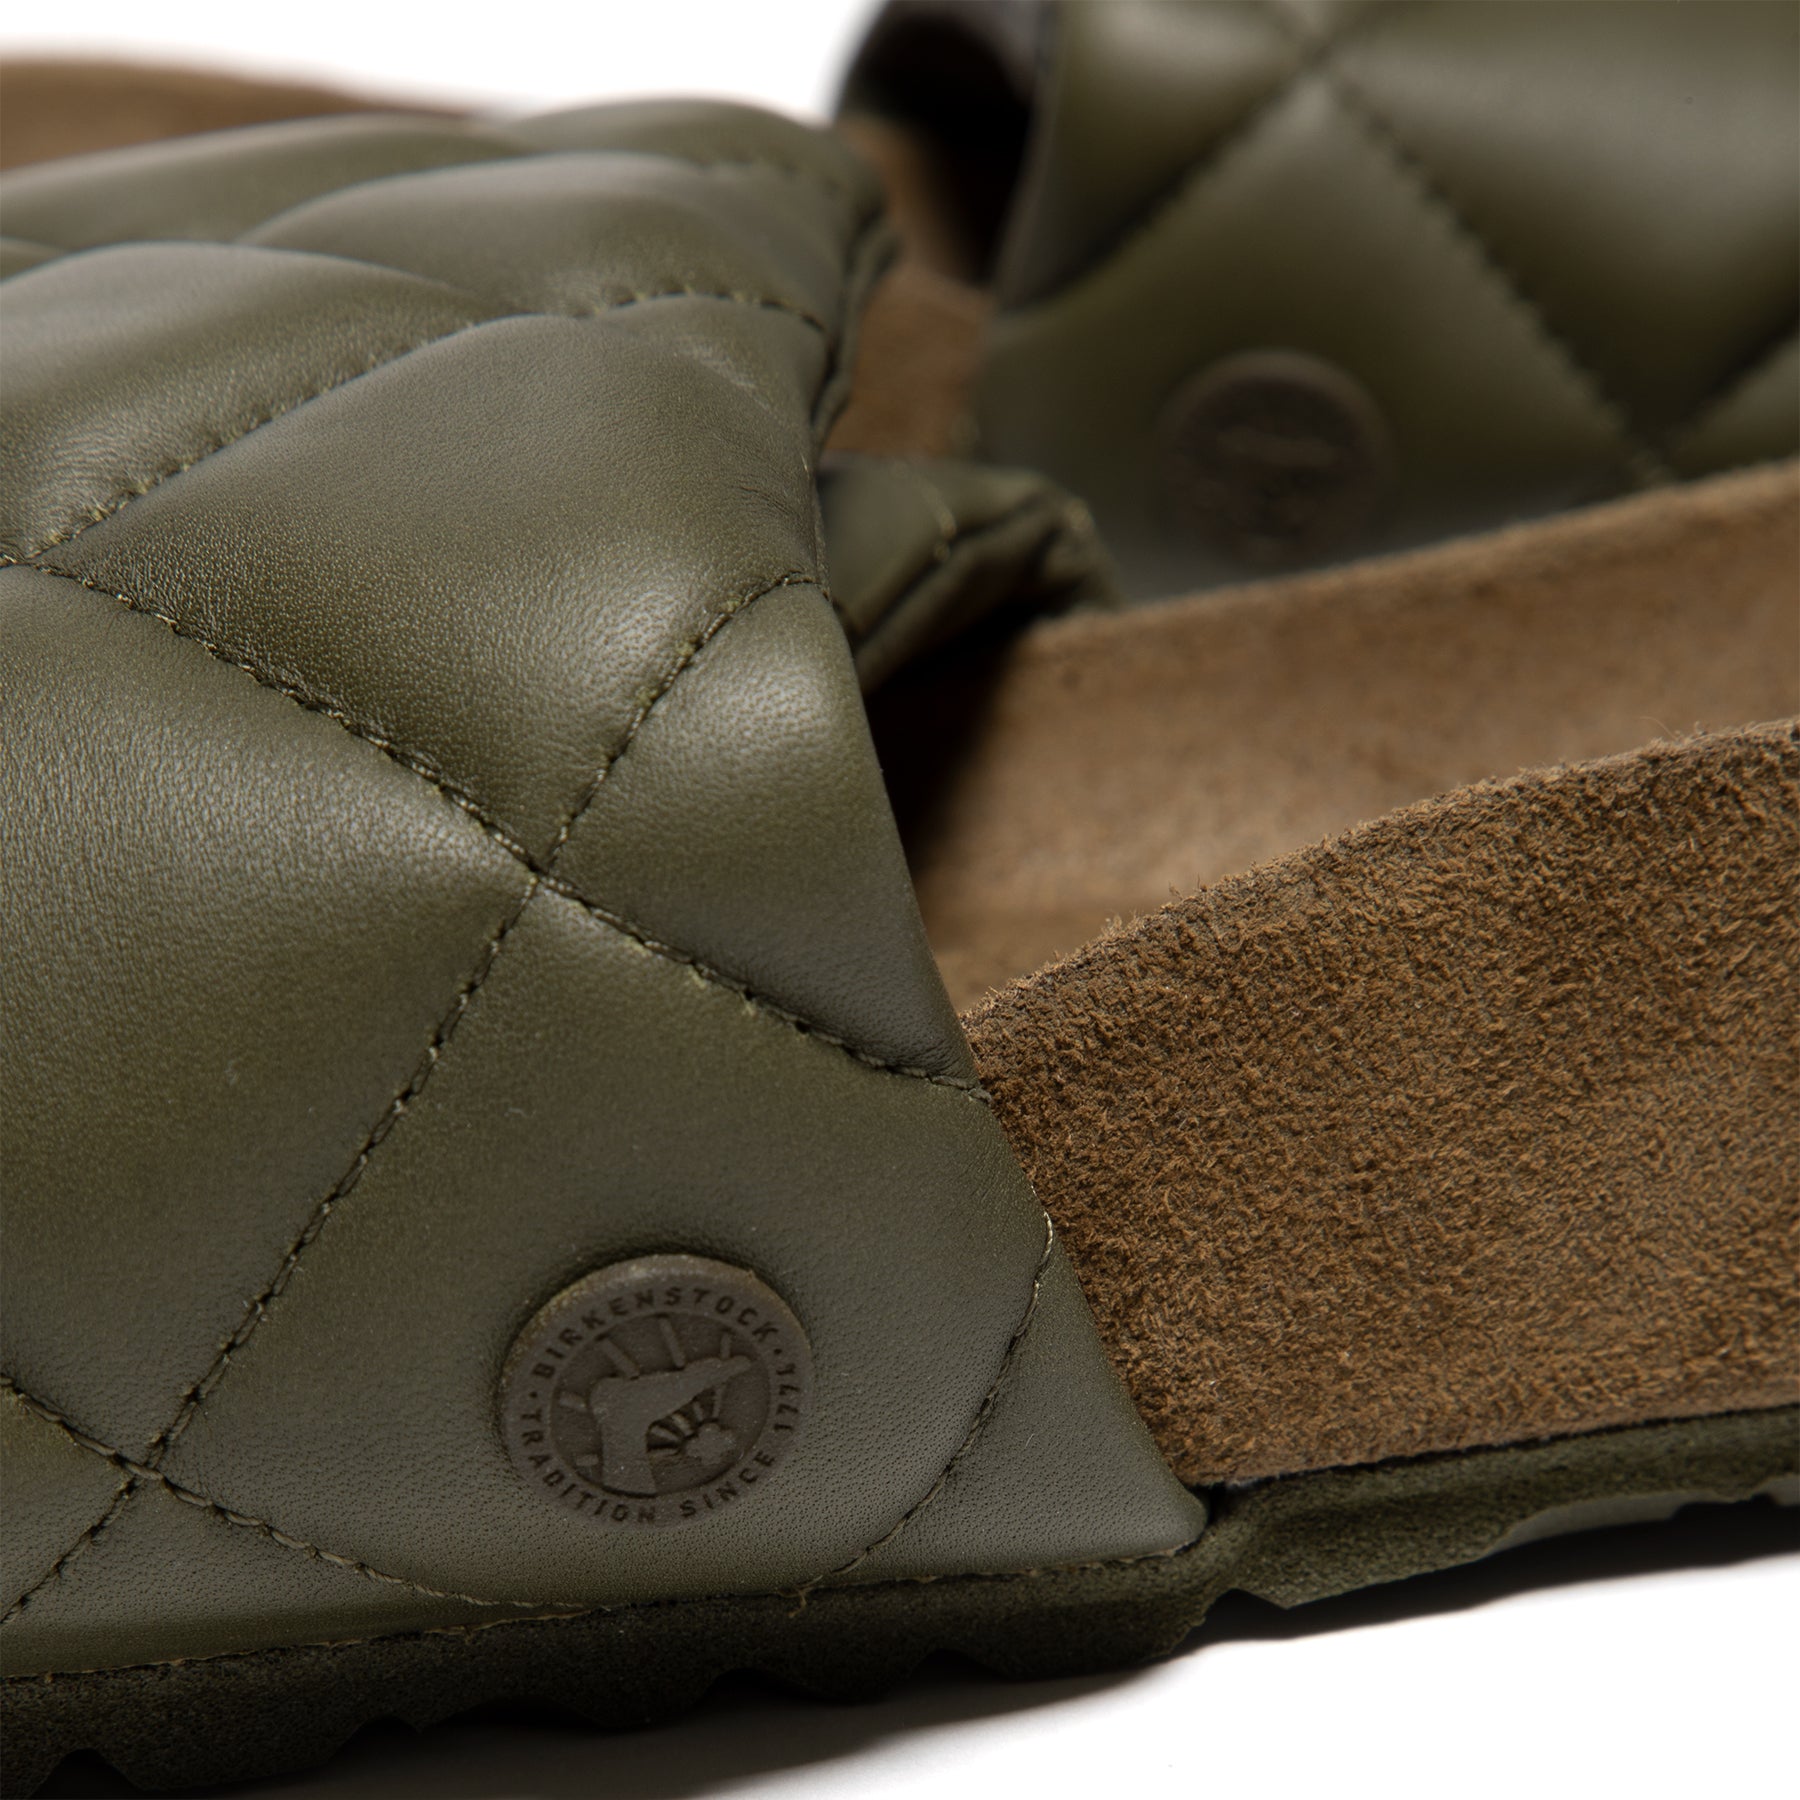 Birkenstock 1774 Sylt Padded Leather Sandals - Black at